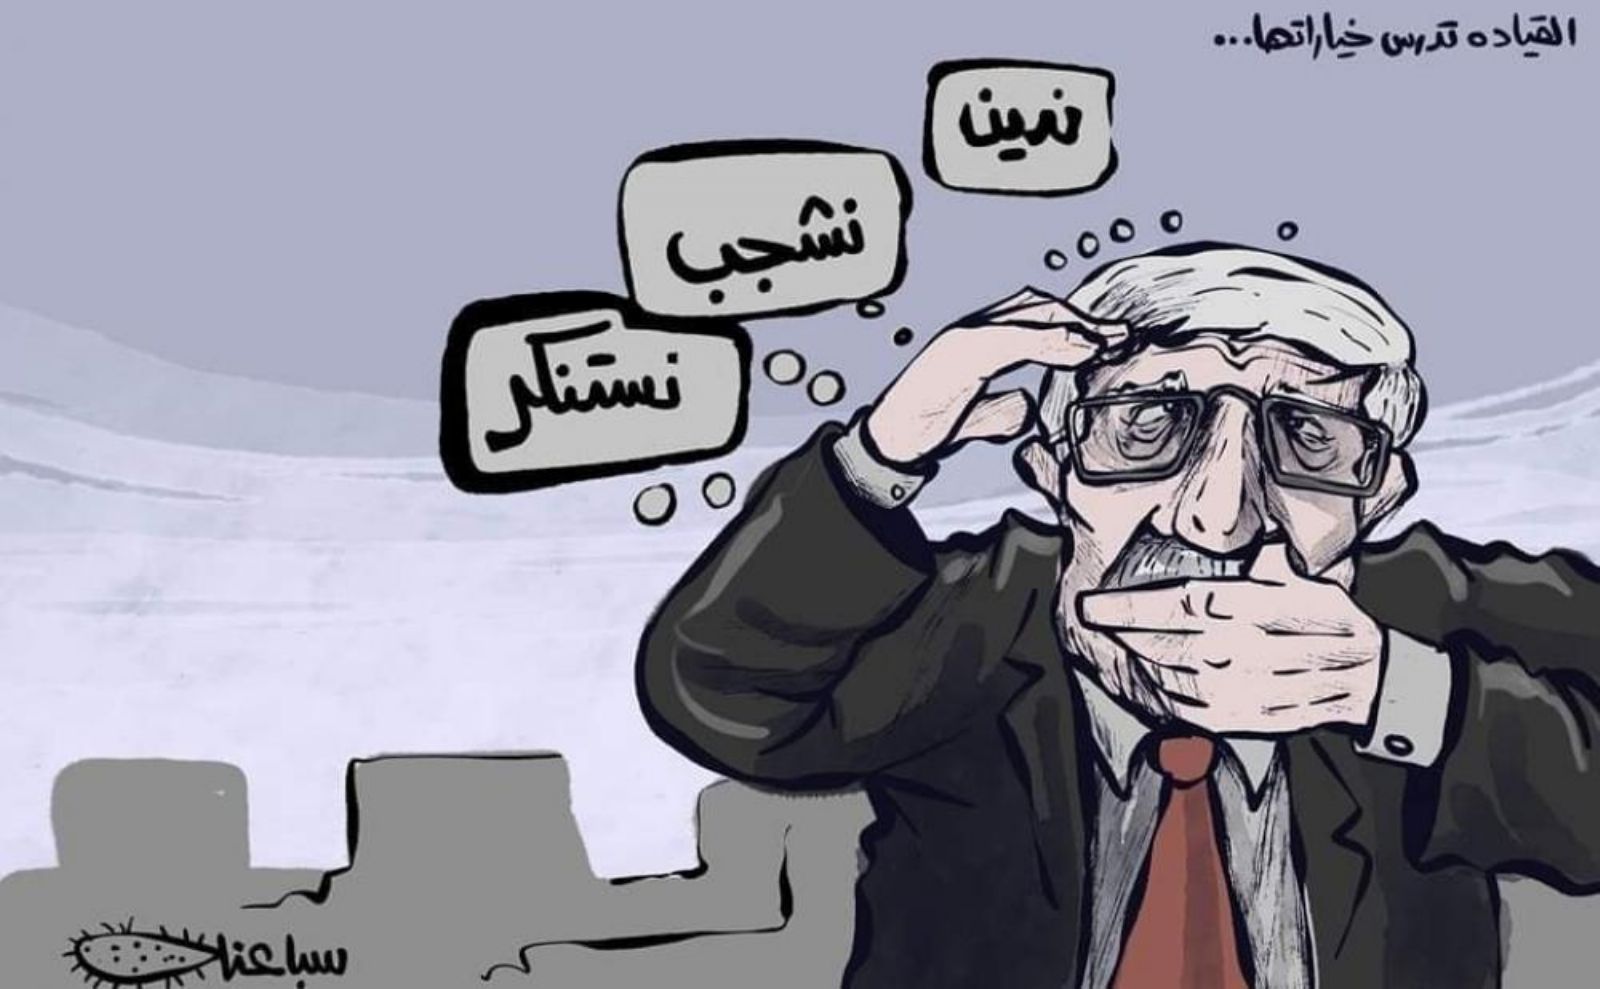 كتلة الصحفي تُدين الفصل التعسفي لرسام الكاريكاتير سباعنة